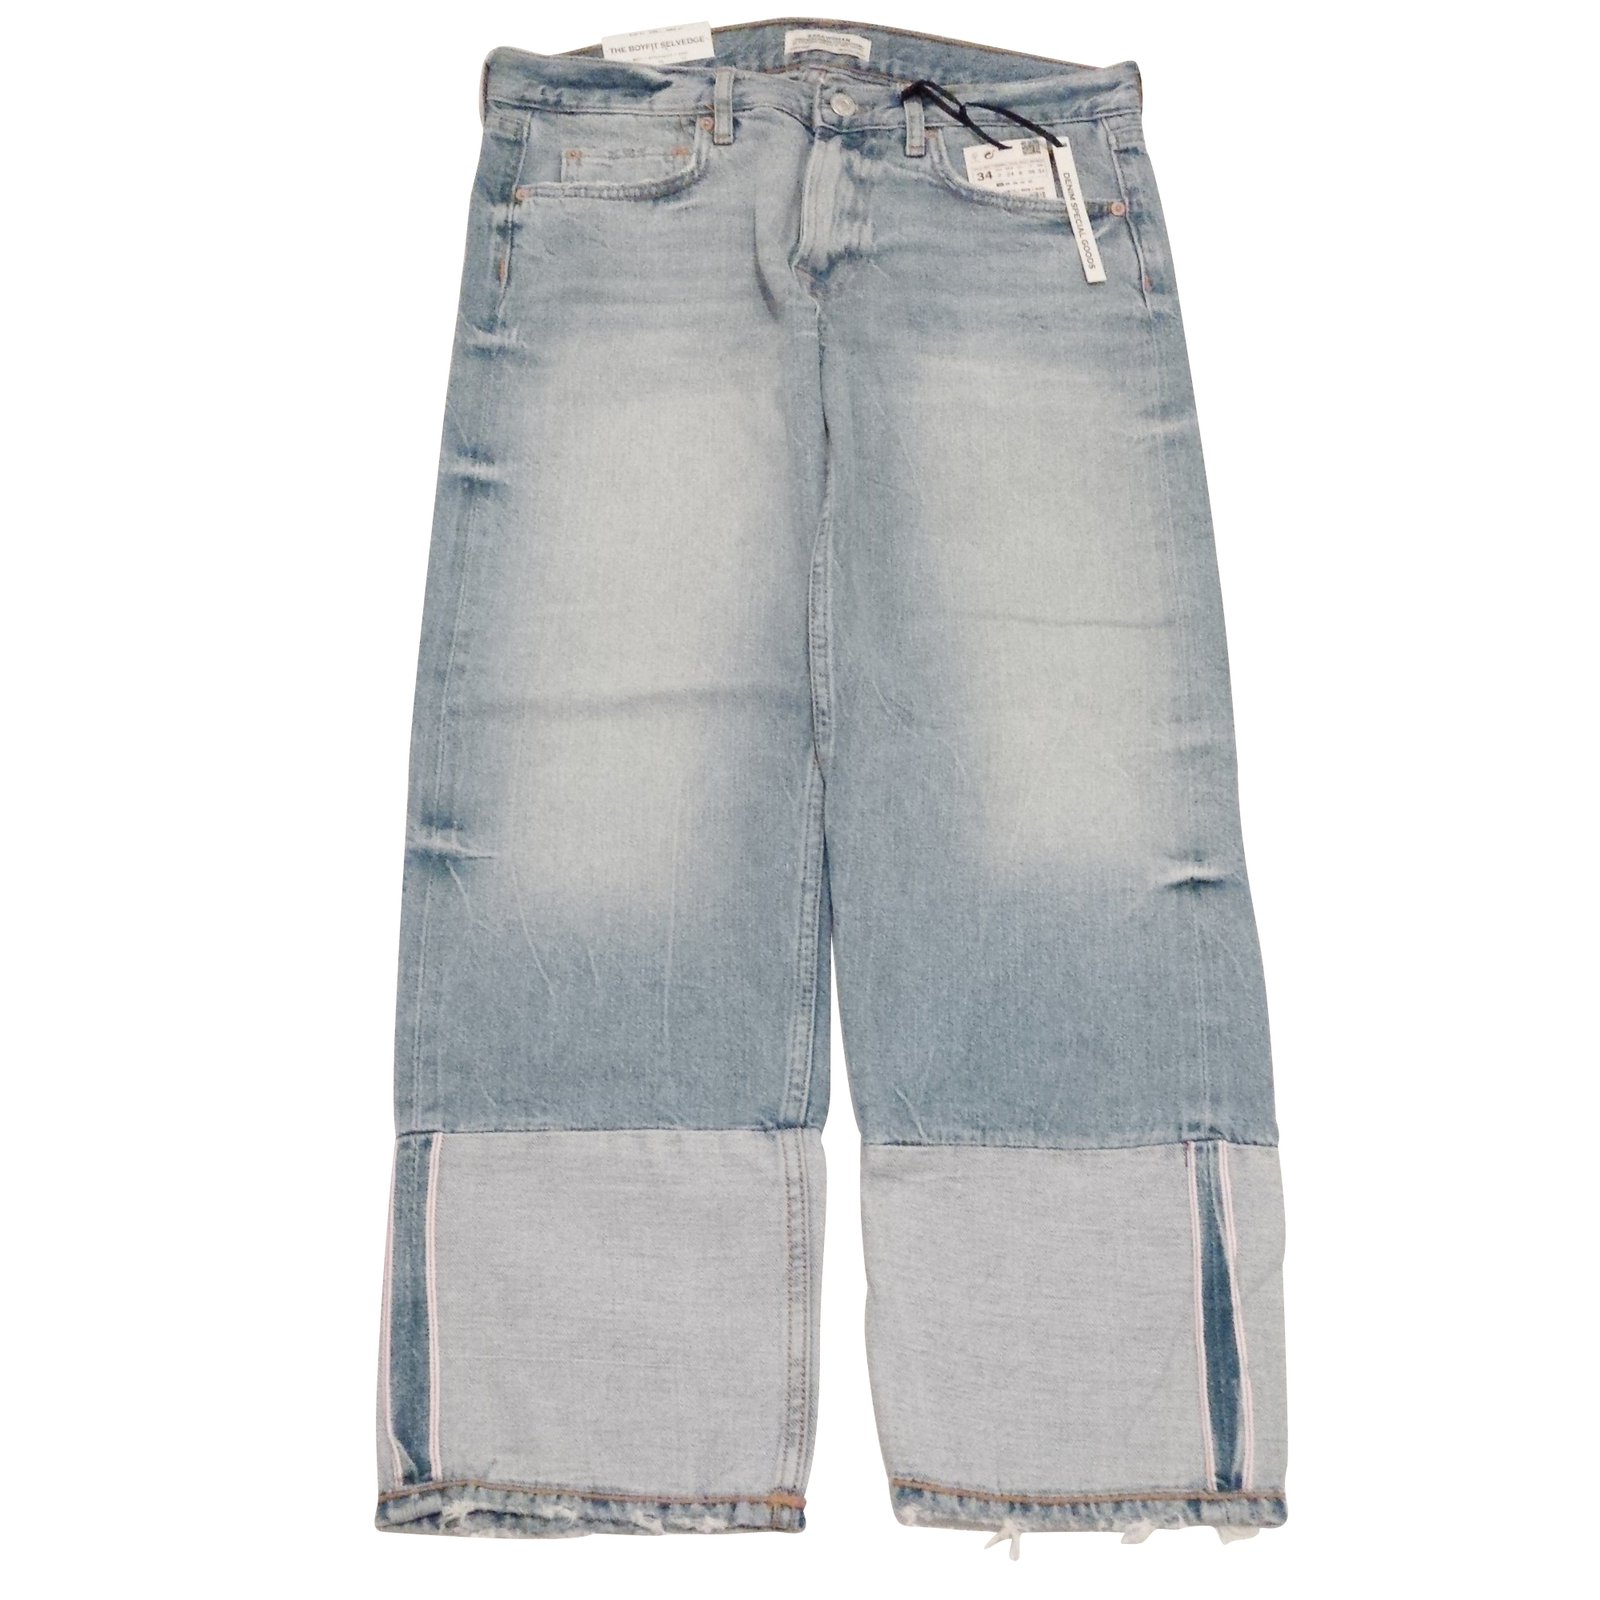 jeans zara premium denim collection